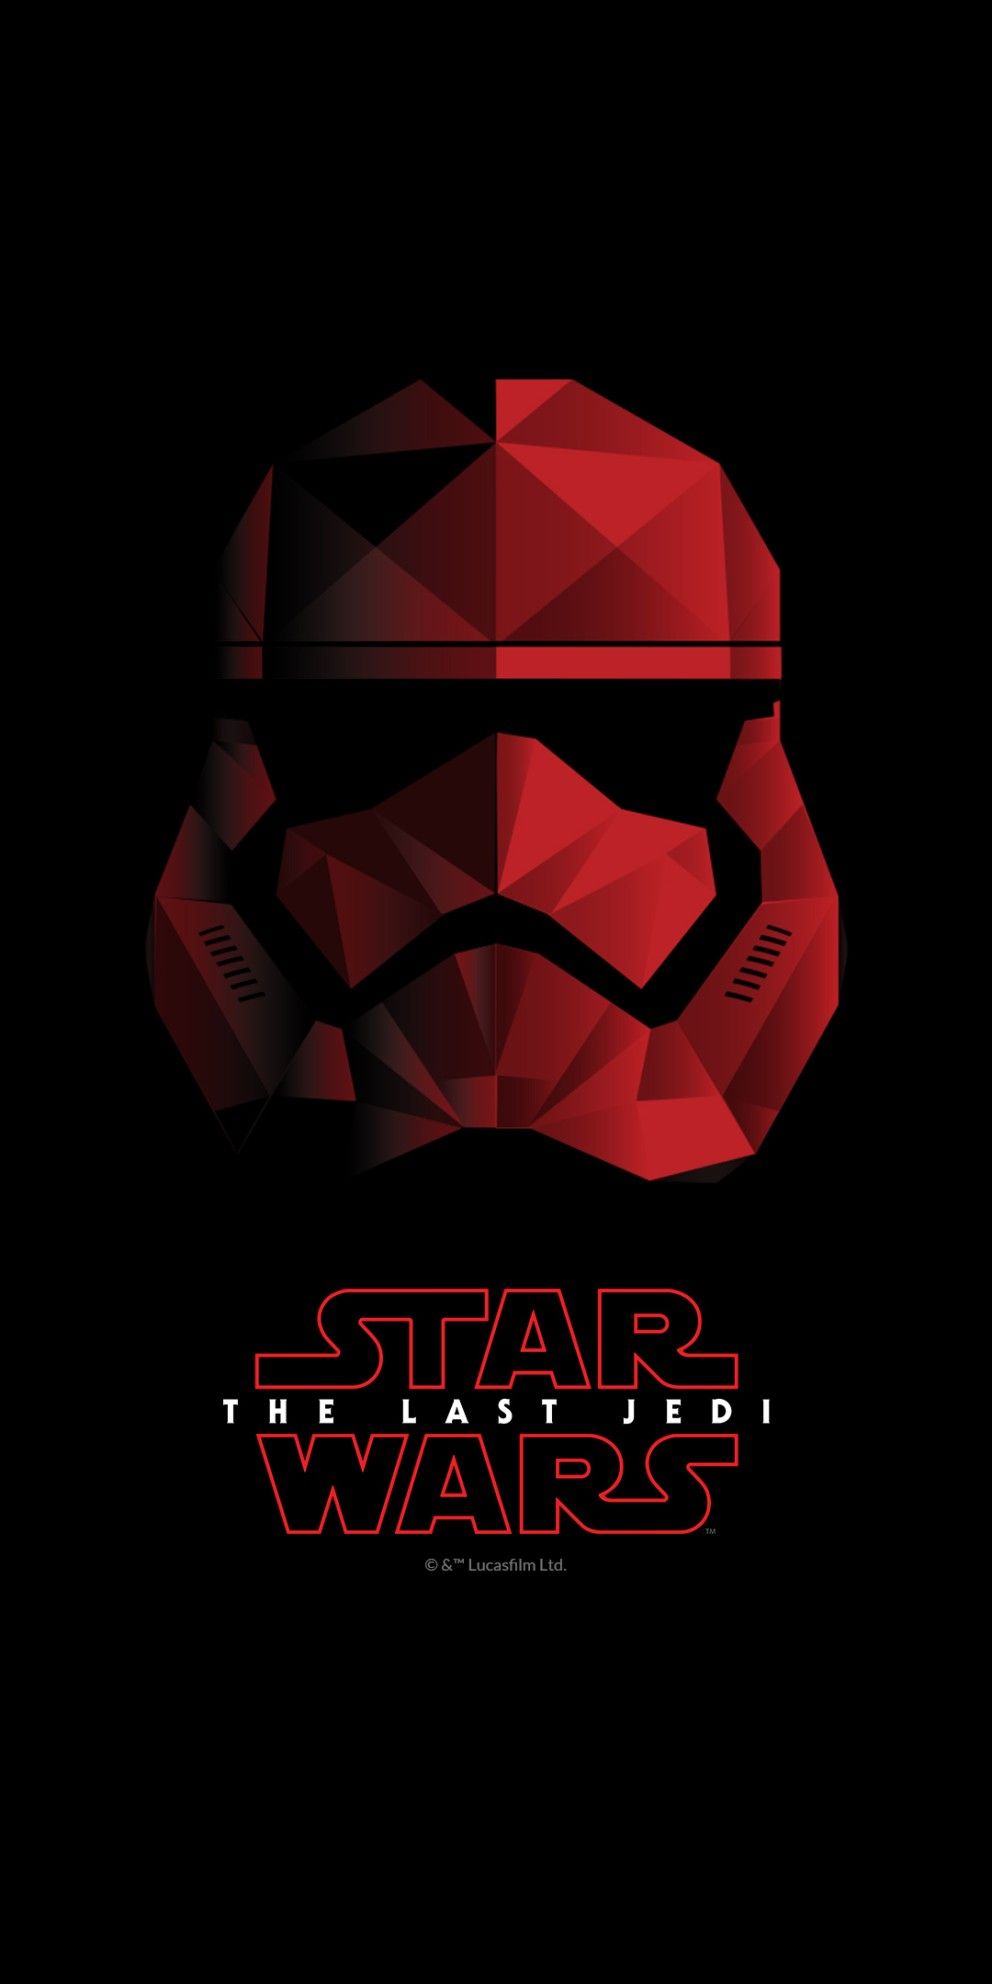 The Last Jedi Star Wars Wallpaper Free The Last Jedi Star Wars Background